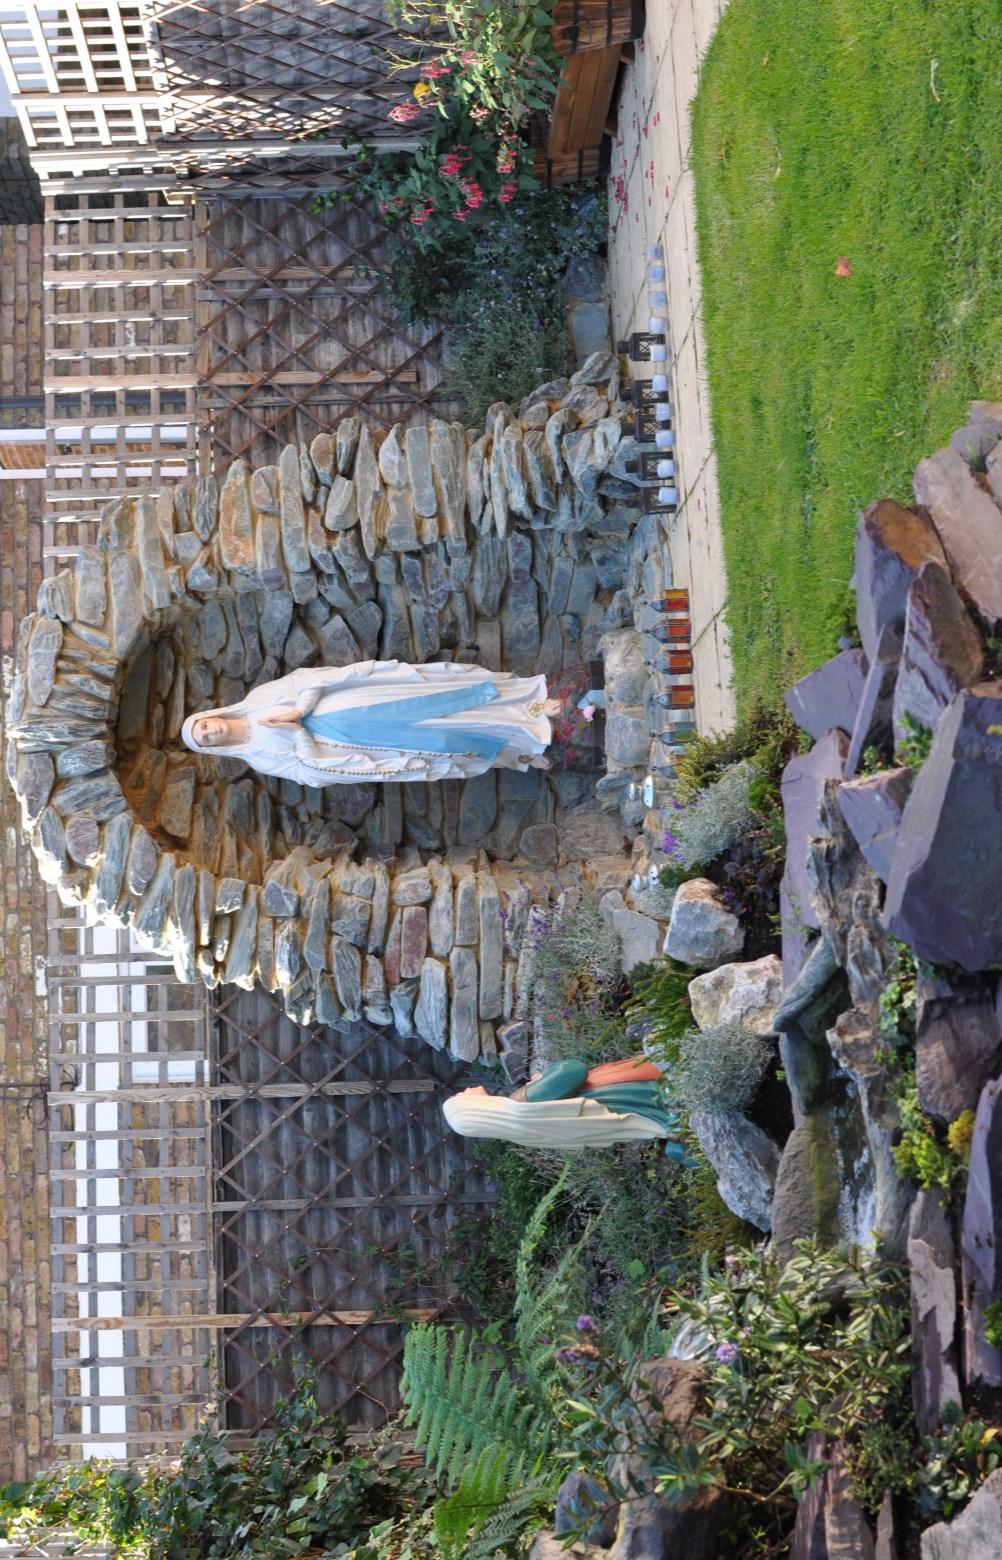 The Lourdes grotto in the parish prayer garden was